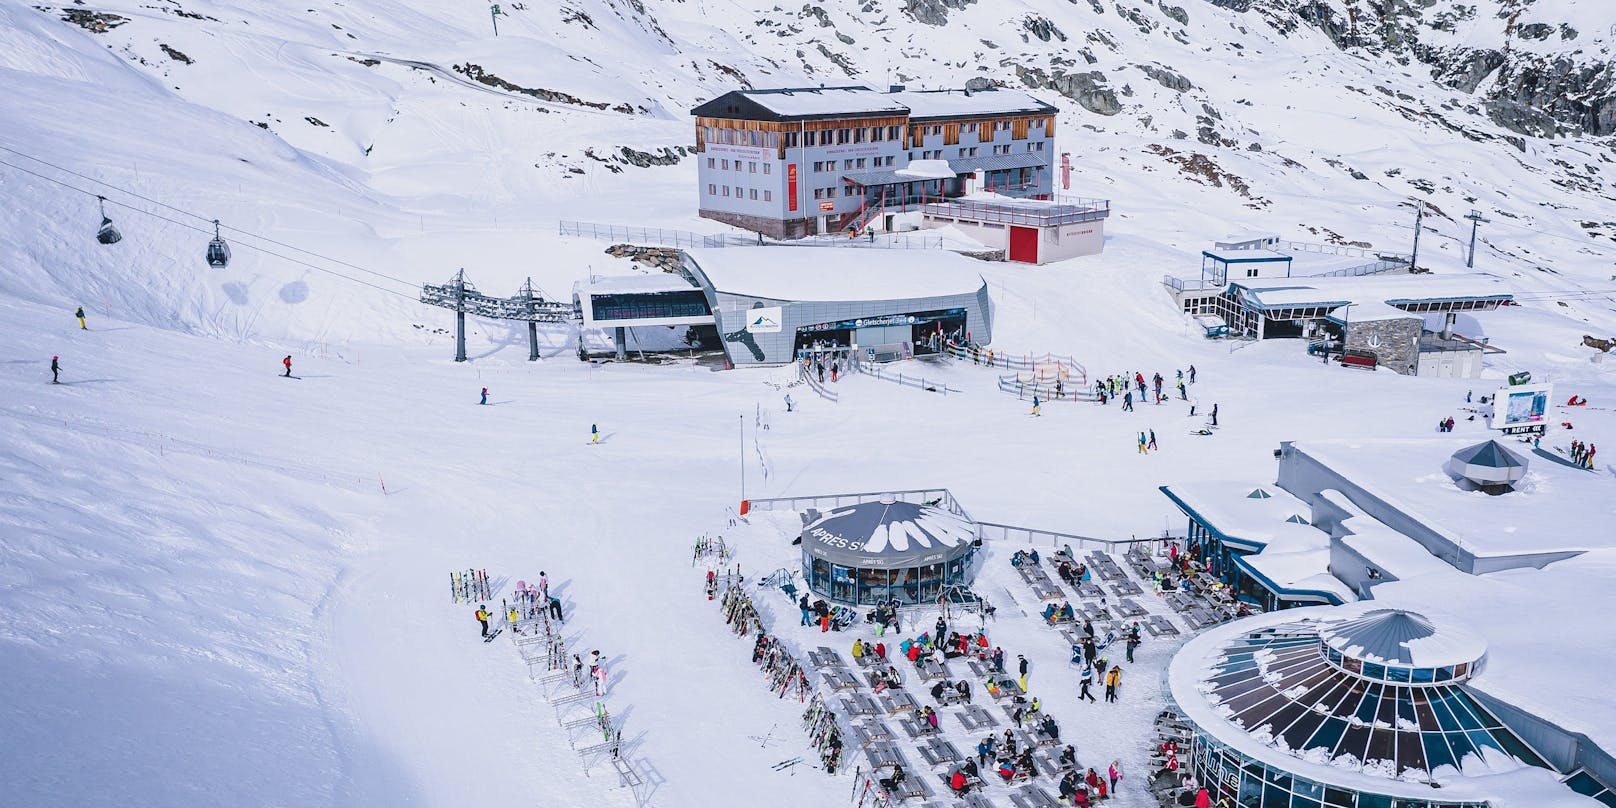  Übersicht am Skigebiet Kitzsteinhorn, aufgenommen am 21. Oktober 2020